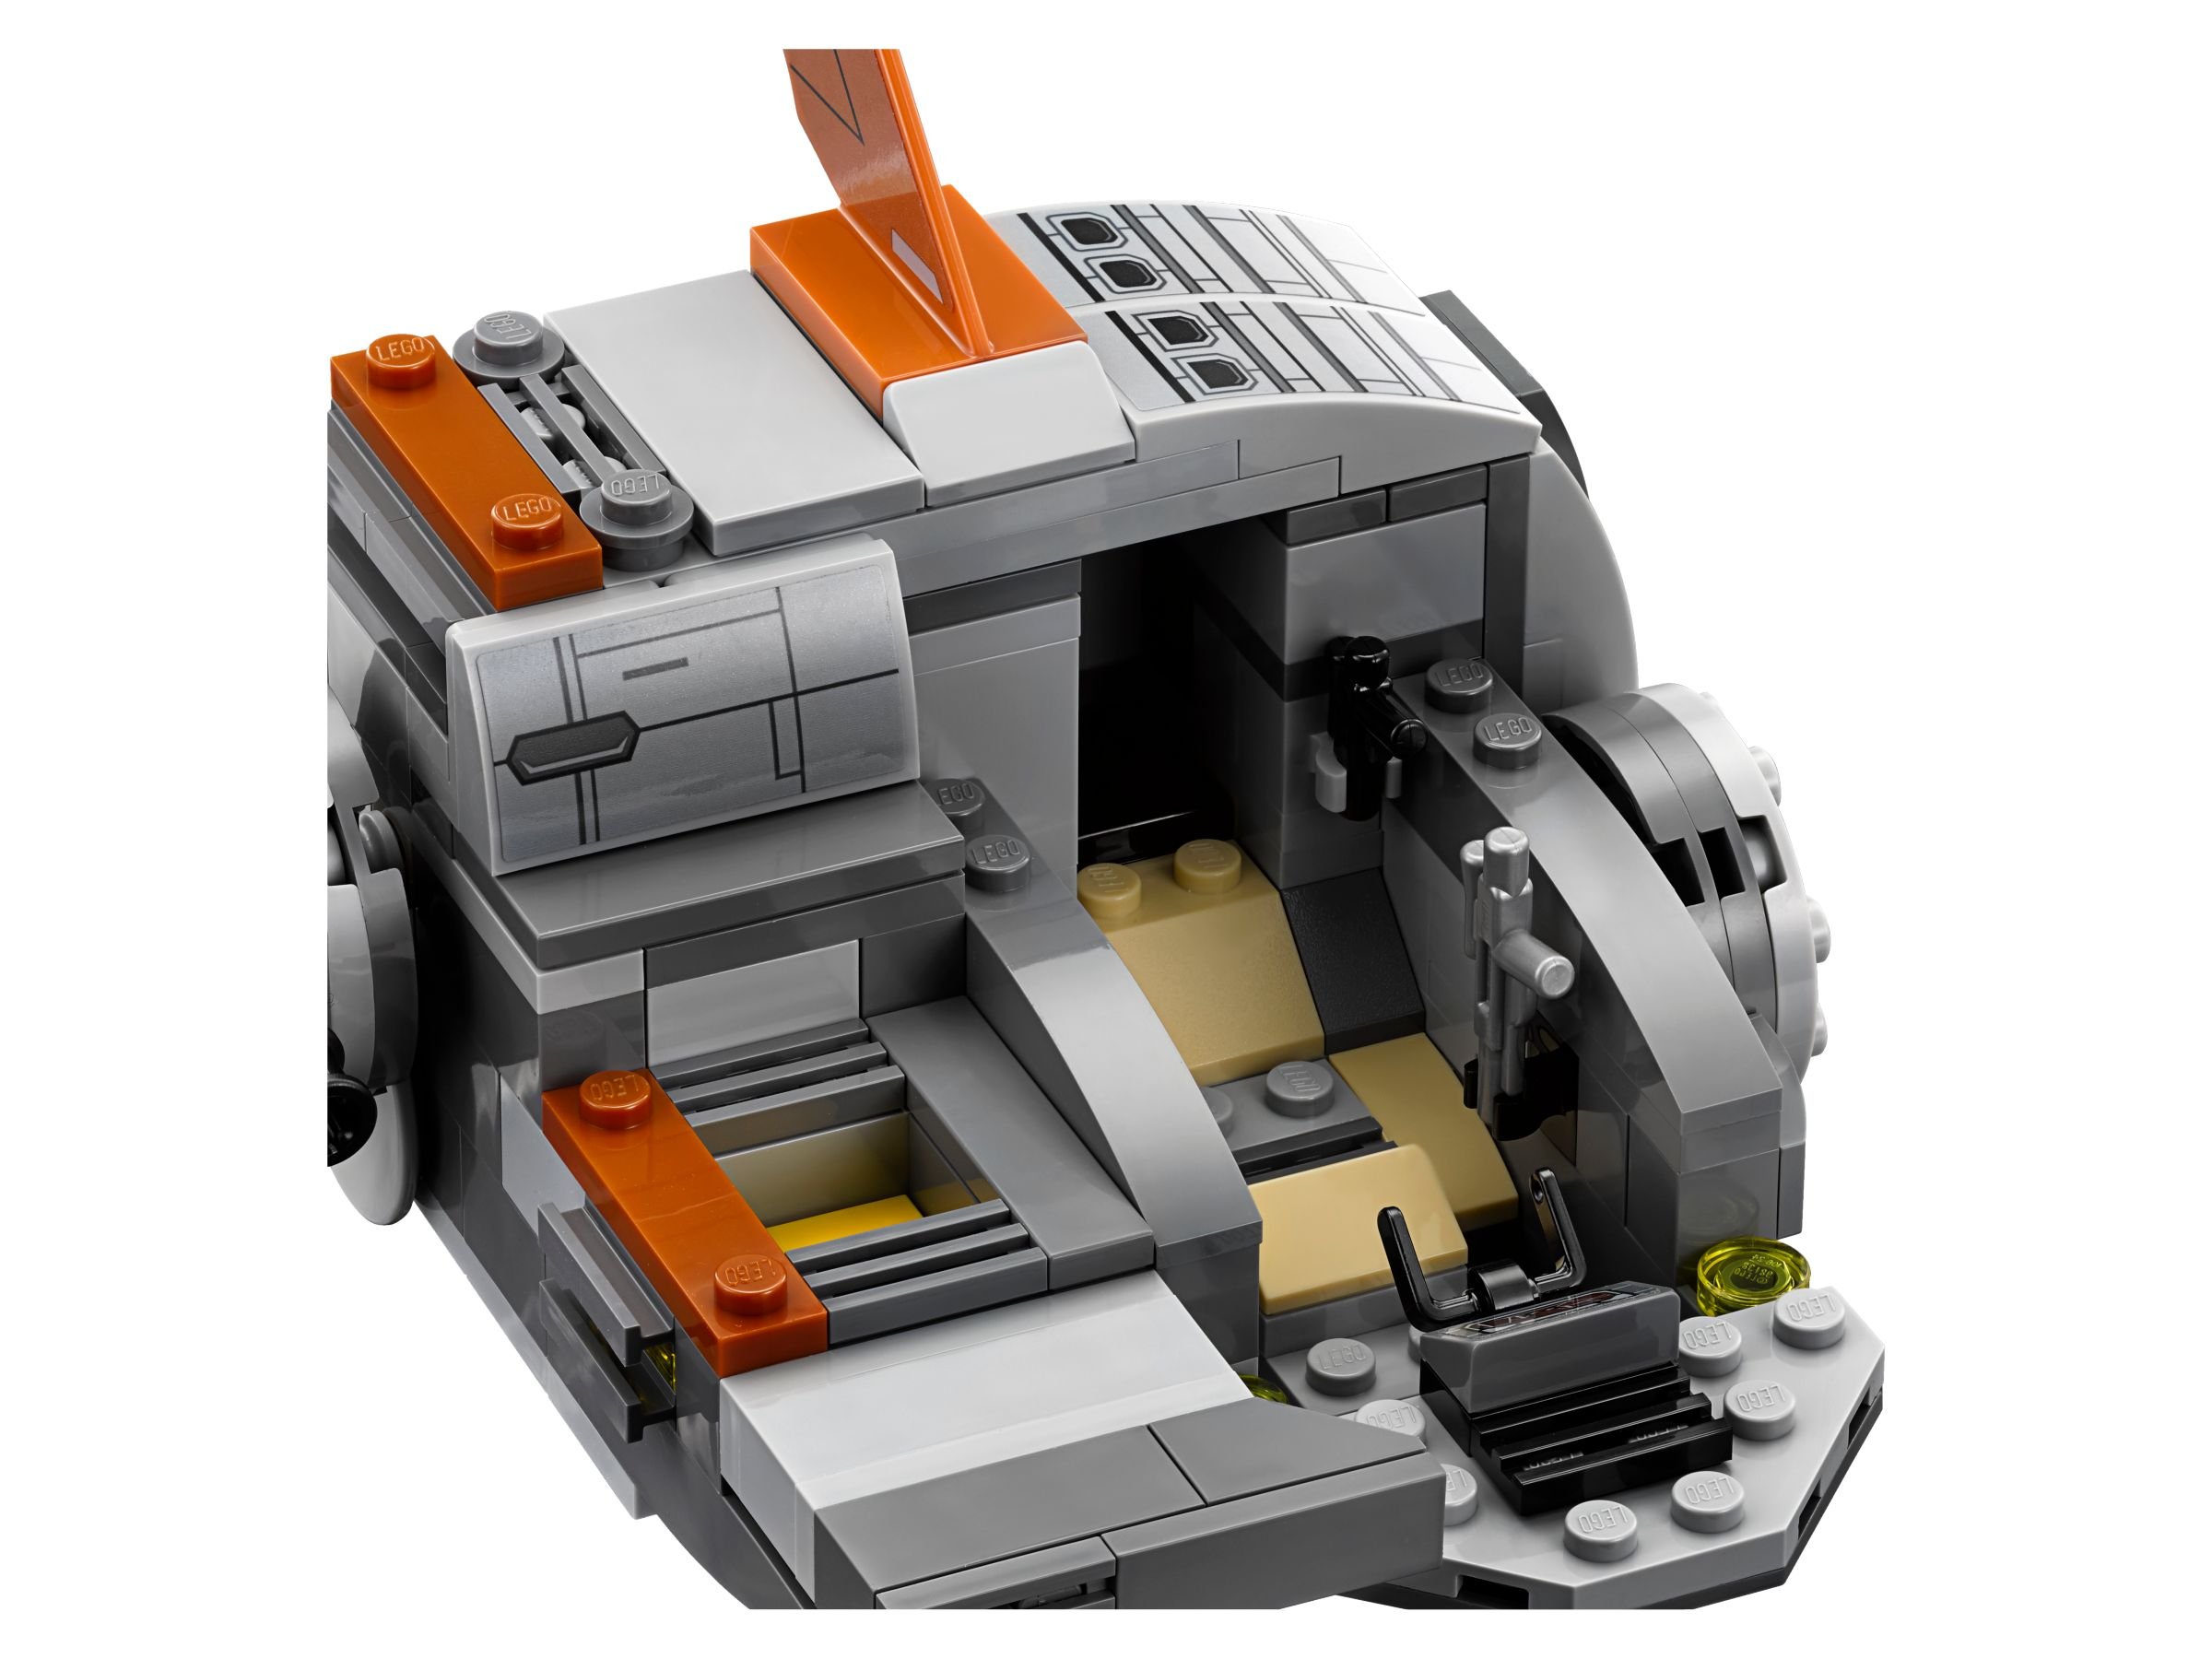 LEGO Star Wars 75176 Resistance Transport Pod™ LEGO_75176_alt8.jpg